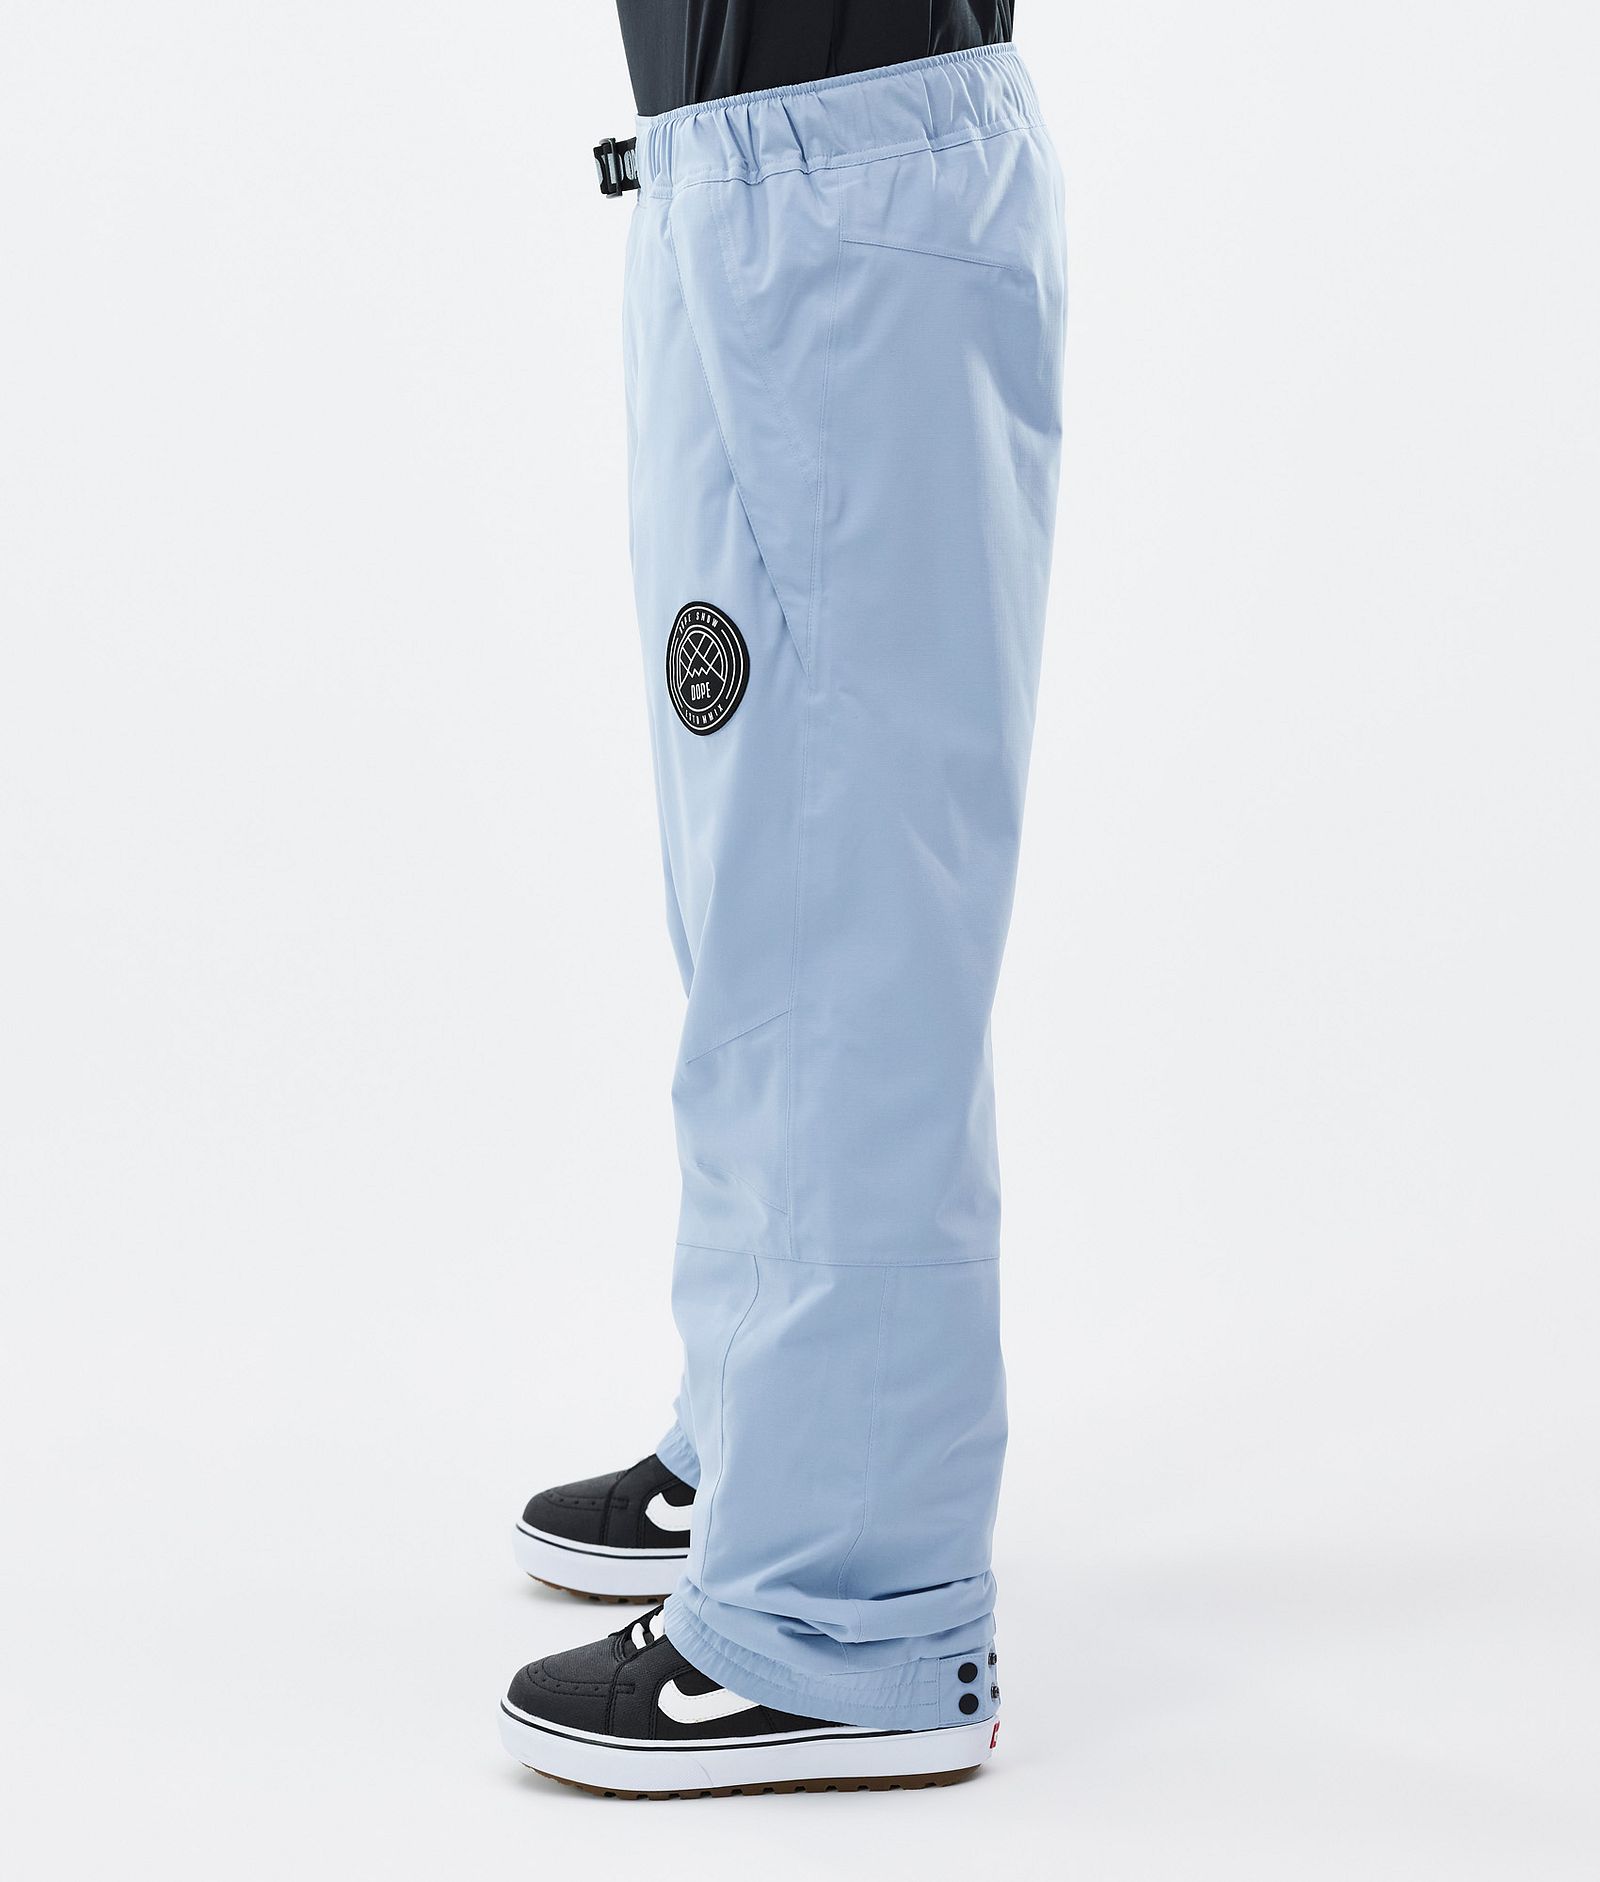 Blizzard Pantaloni Snowboard Uomo Light Blue, Immagine 3 di 5